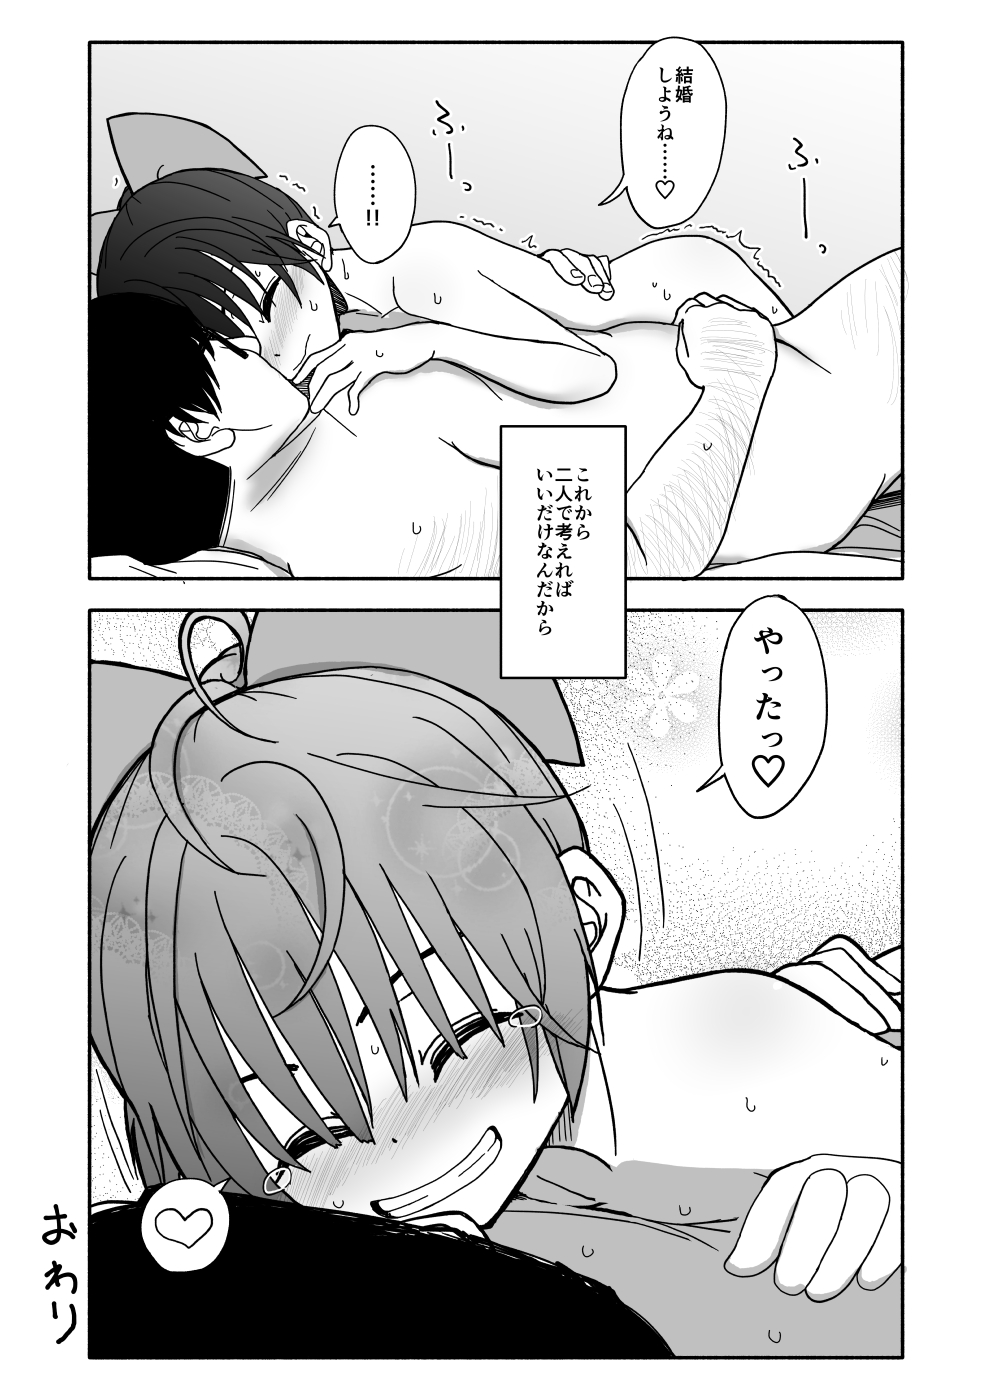 [Futotta Obasan] Okashi Tsukuri Idol ☆ Gimi ! Ecchi na Himitsu no Tokkun manga page 118 full